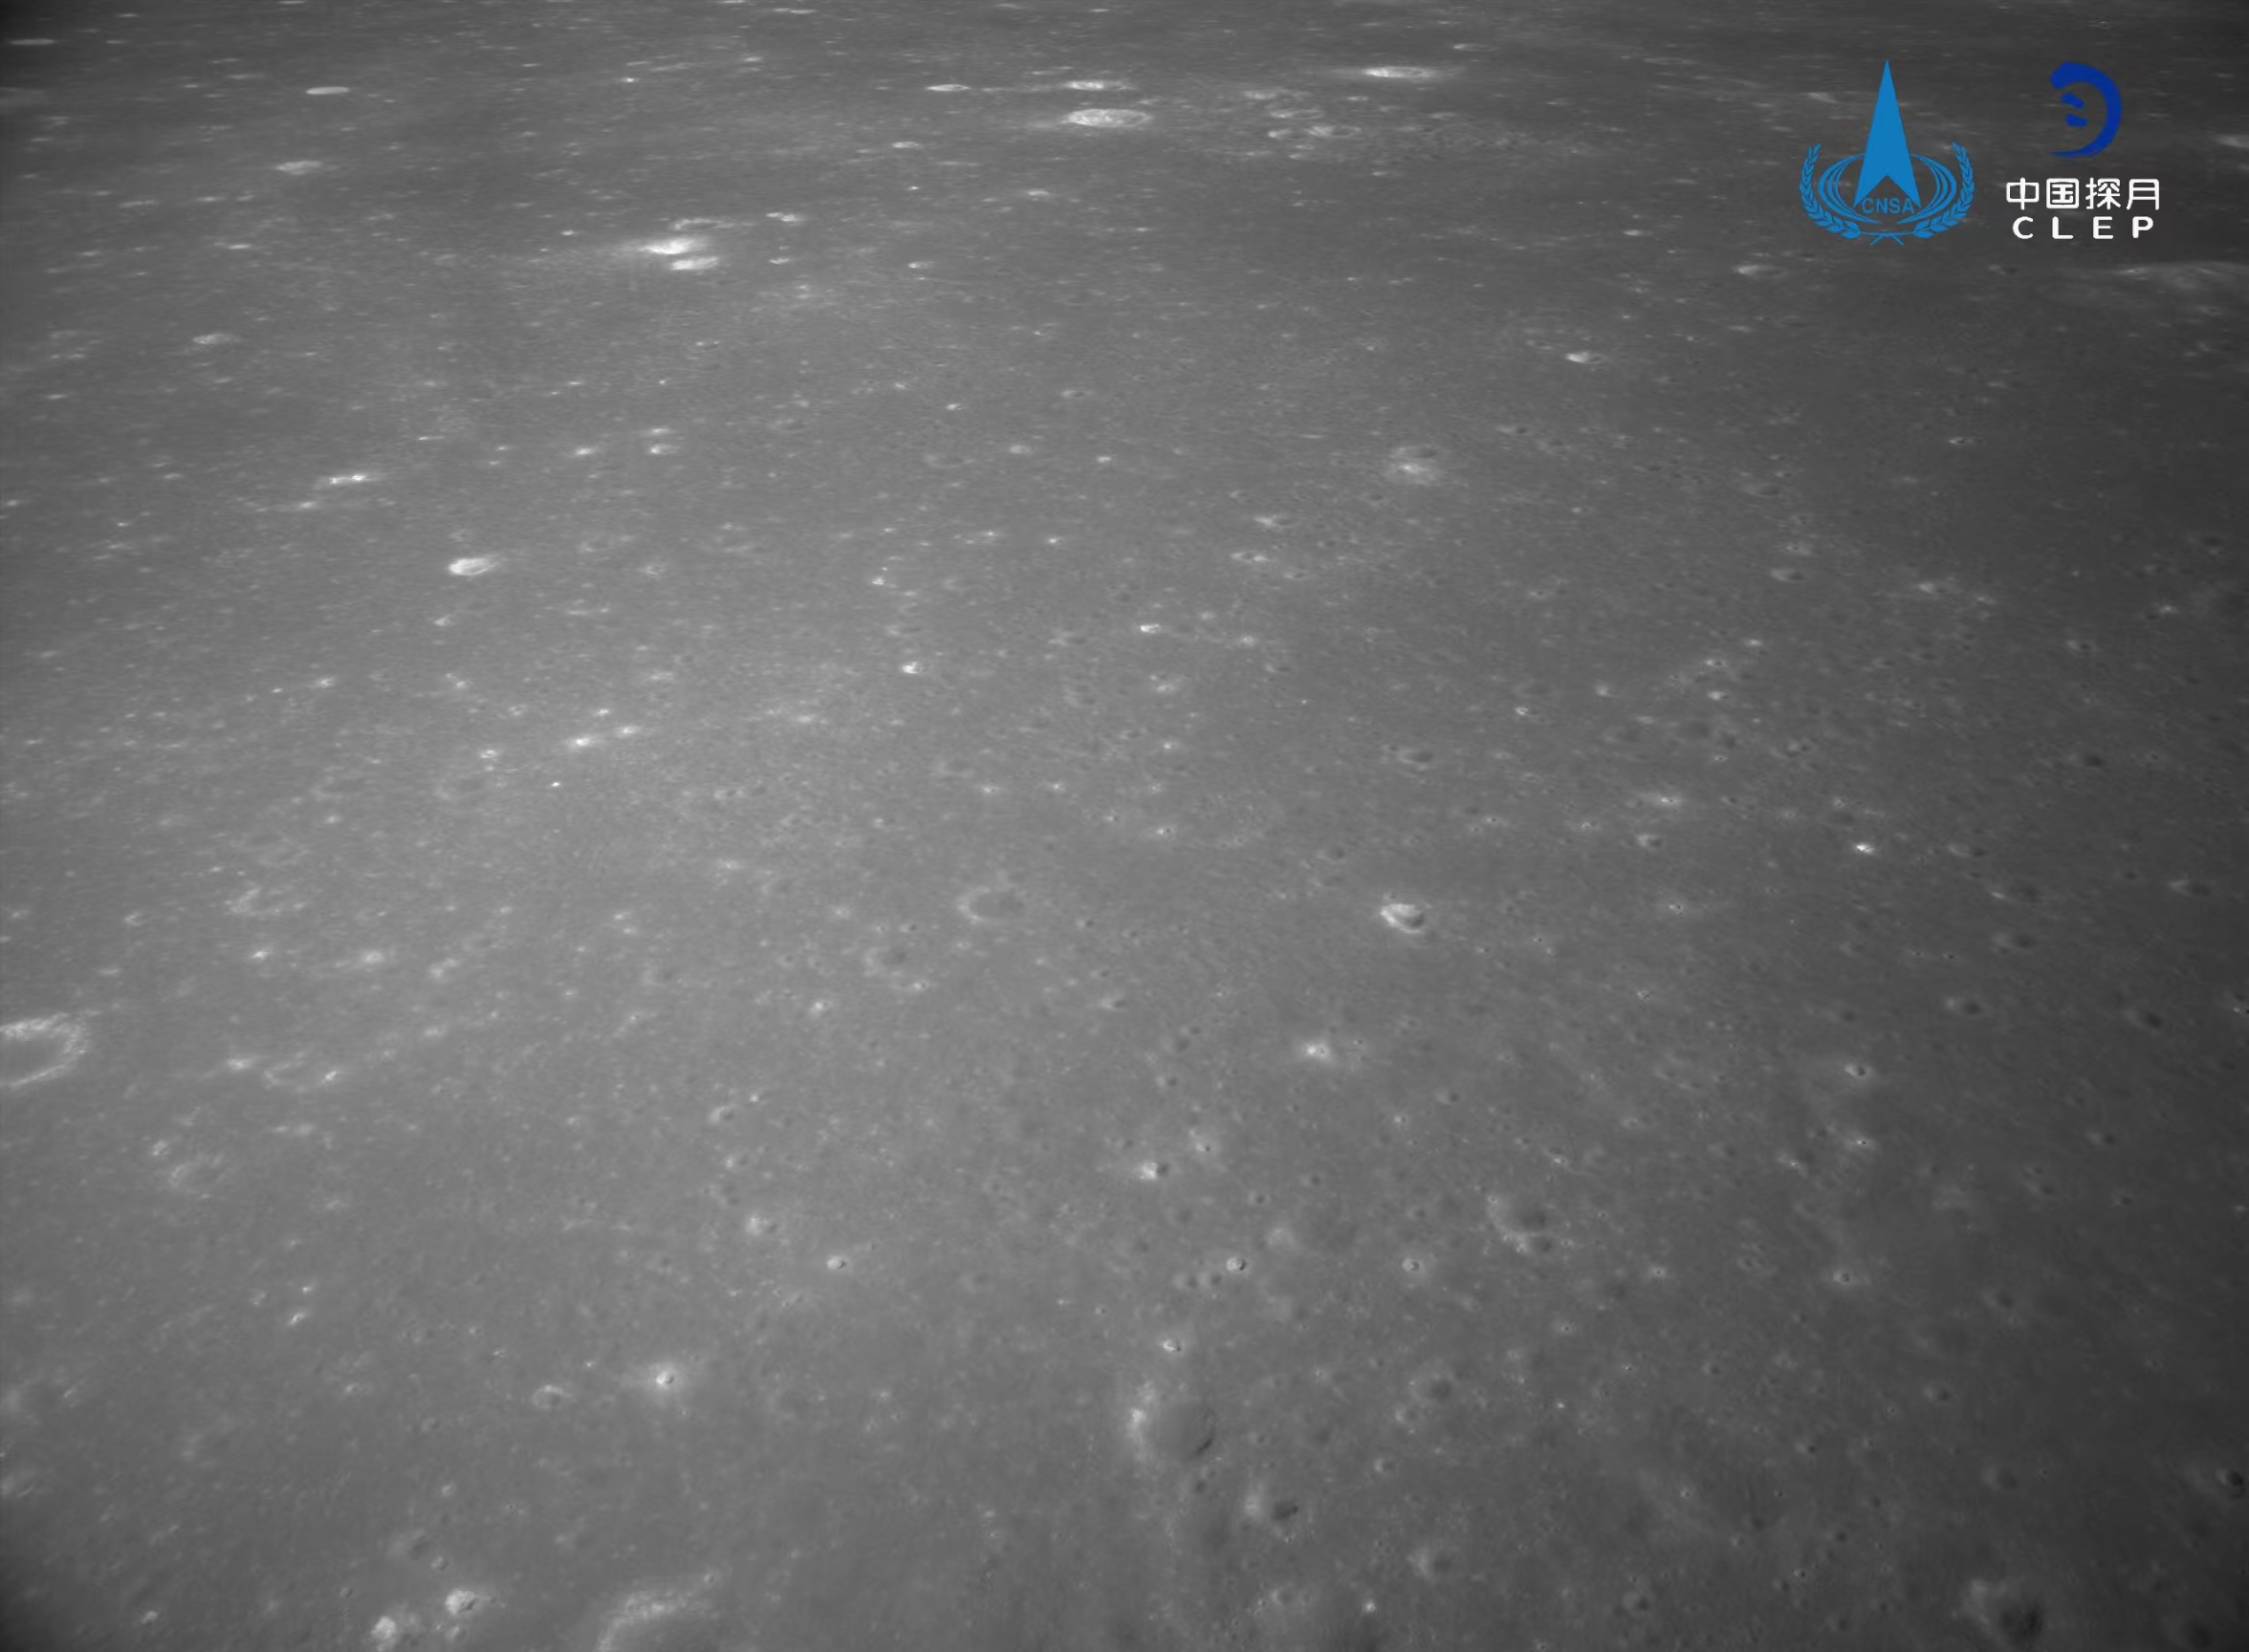 该图由降落相机在降落过程中拍摄
，拍摄的月背区域上部中间为暗色的玄武岩分布区
。分布有少量亮色石块
。</p><p style=